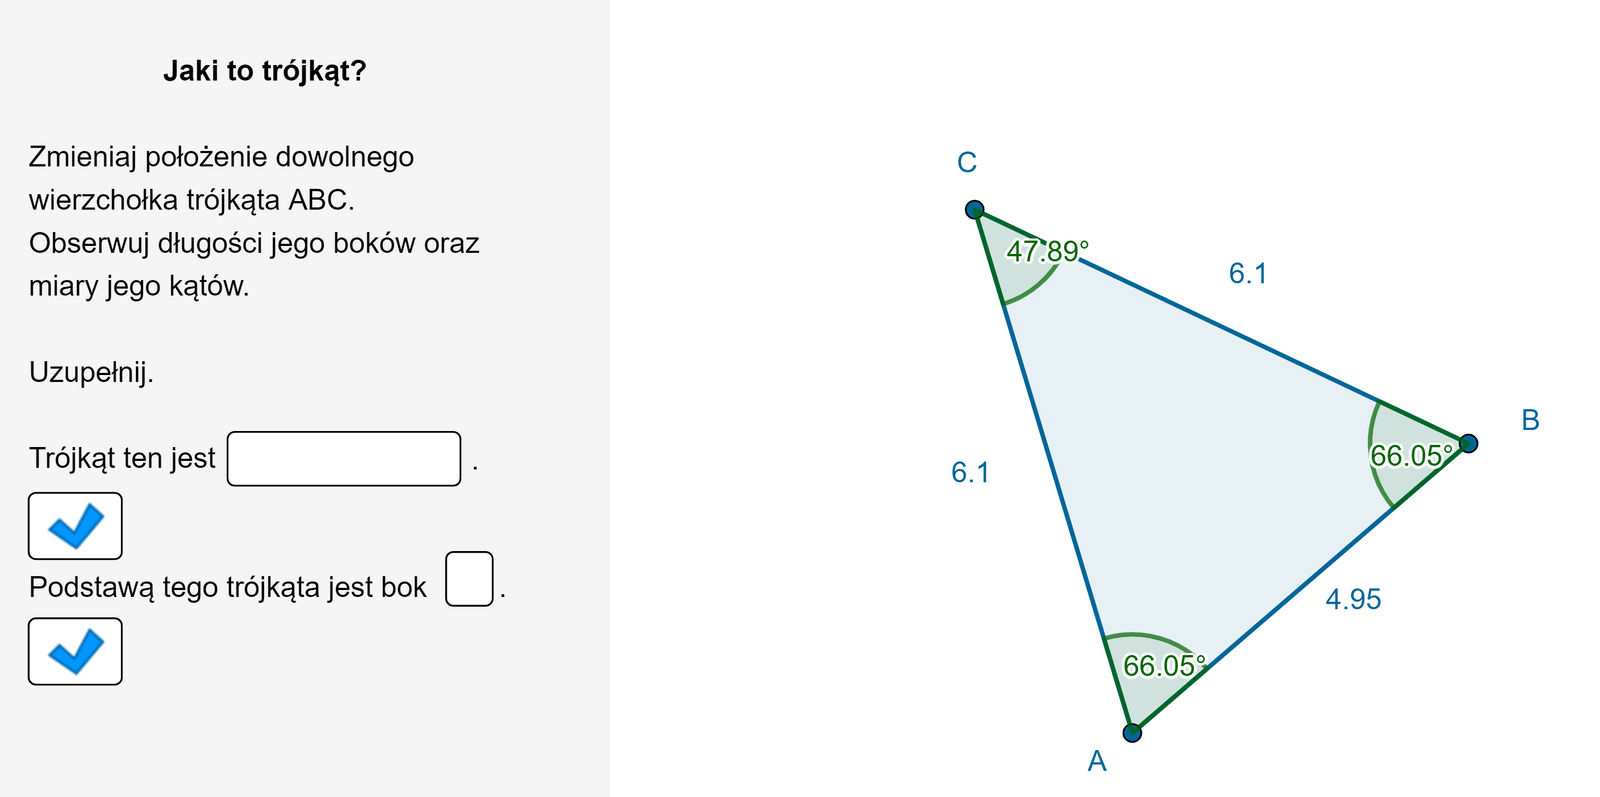 Animacja przedstawia trójkąt równoramienny A B C. Należy poruszać jednym z wierzchołków trójkąta i obserwować długości jego boków oraz miary jego kątów. Należy odpowiedzieć na pytania: Jakim trójkątem pozostaje zawsze ten trójkąt? Który z boków w danym momencie jest podstawą tego trójkąta? Zauważamy, że trójkąt jest zawsze równoramienny, a podstawą jest bok AB.